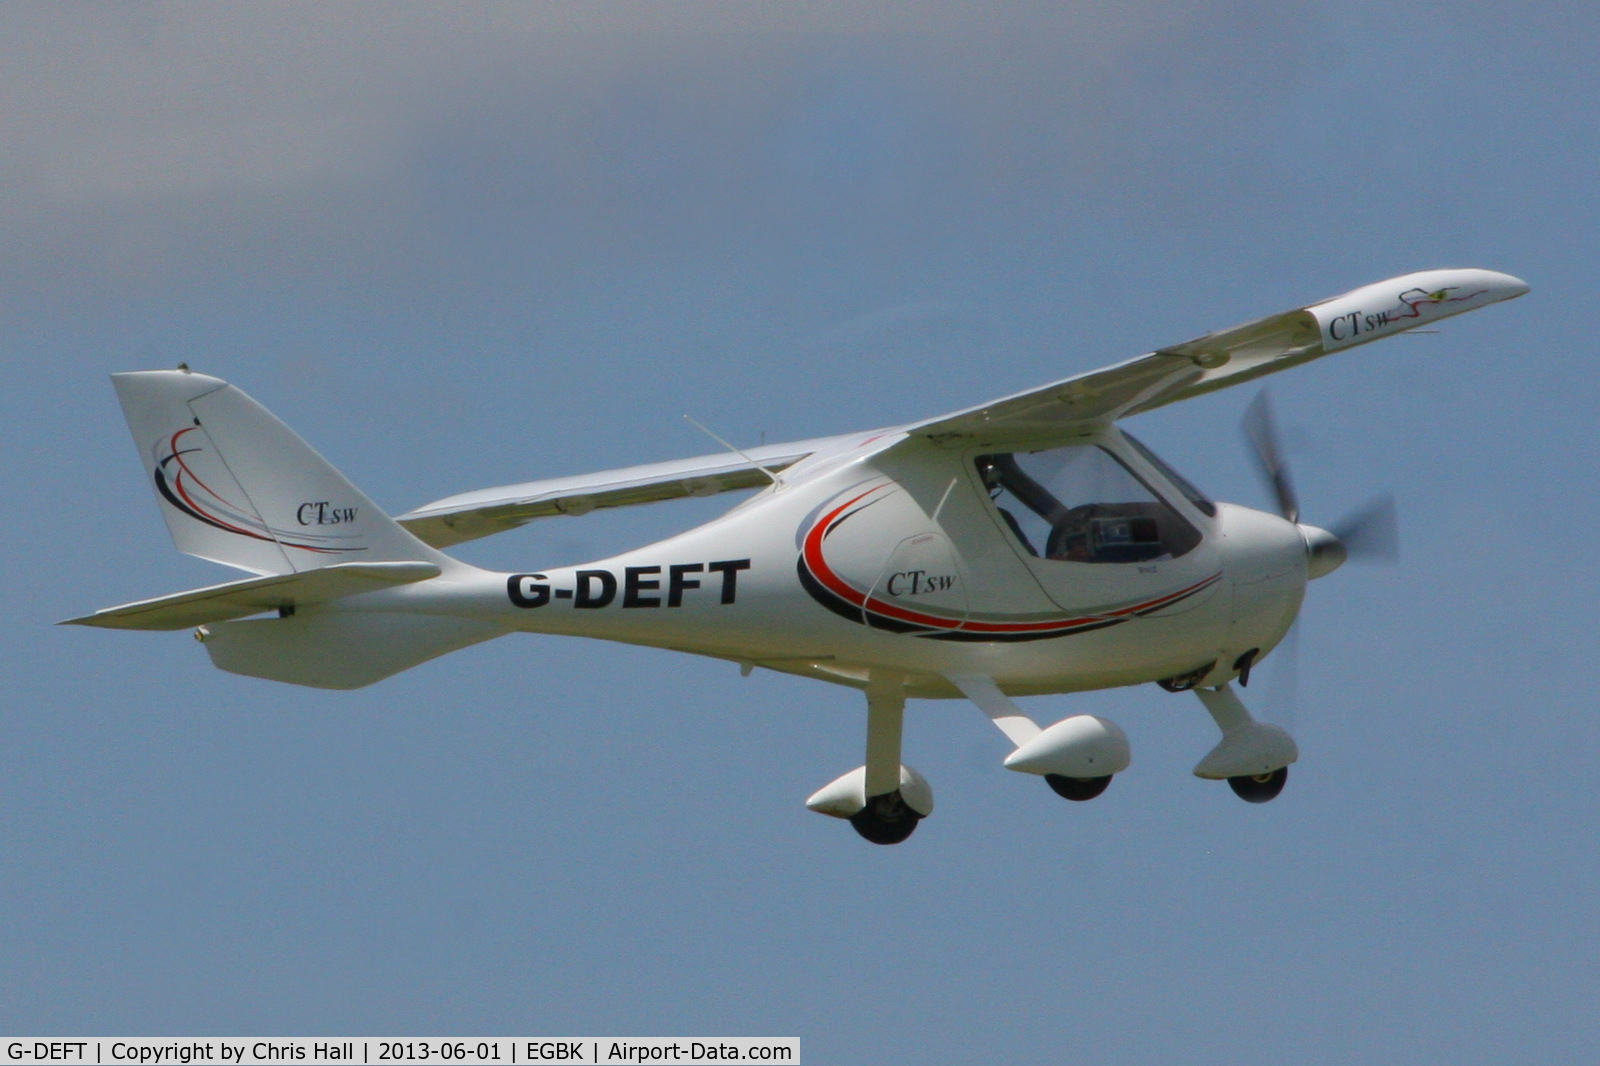 G-DEFT, 2007 Flight Design CTSW C/N 8313, at AeroExpo 2013